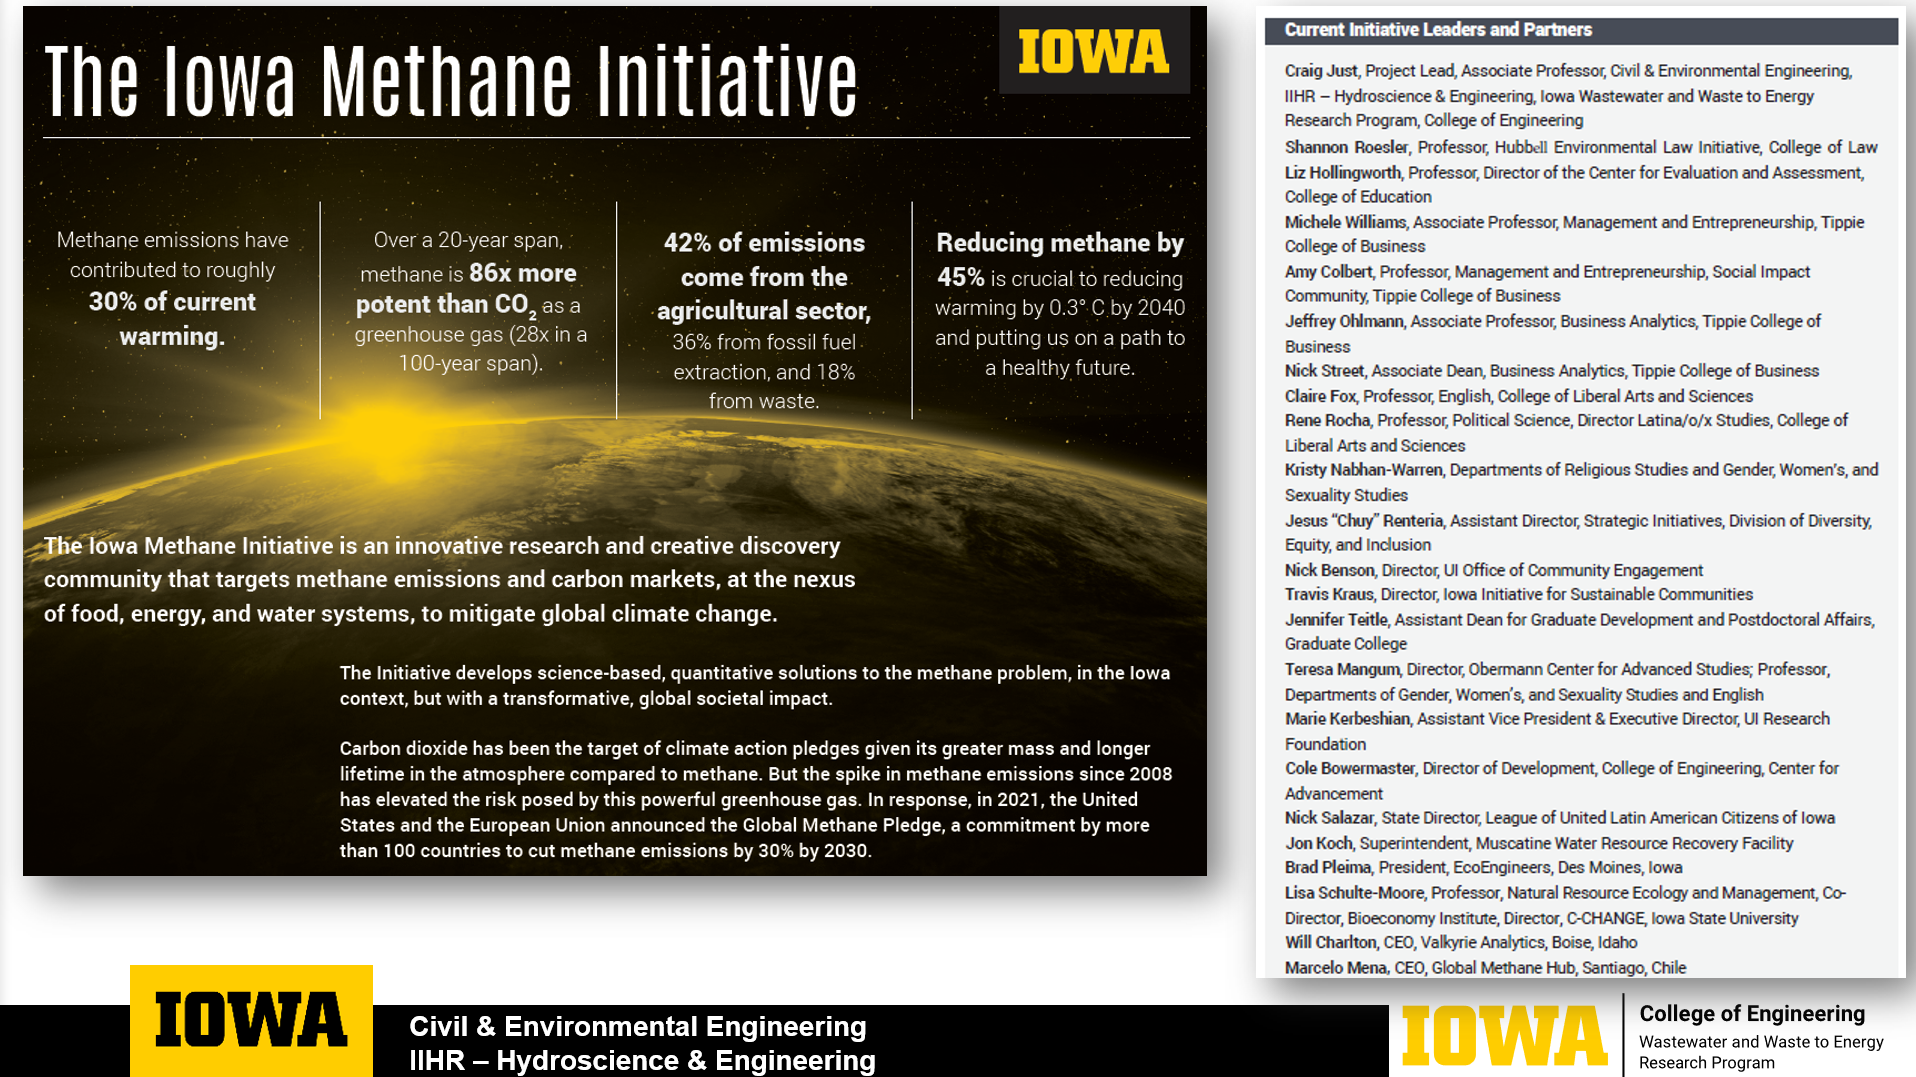 Iowa Methane Initiative